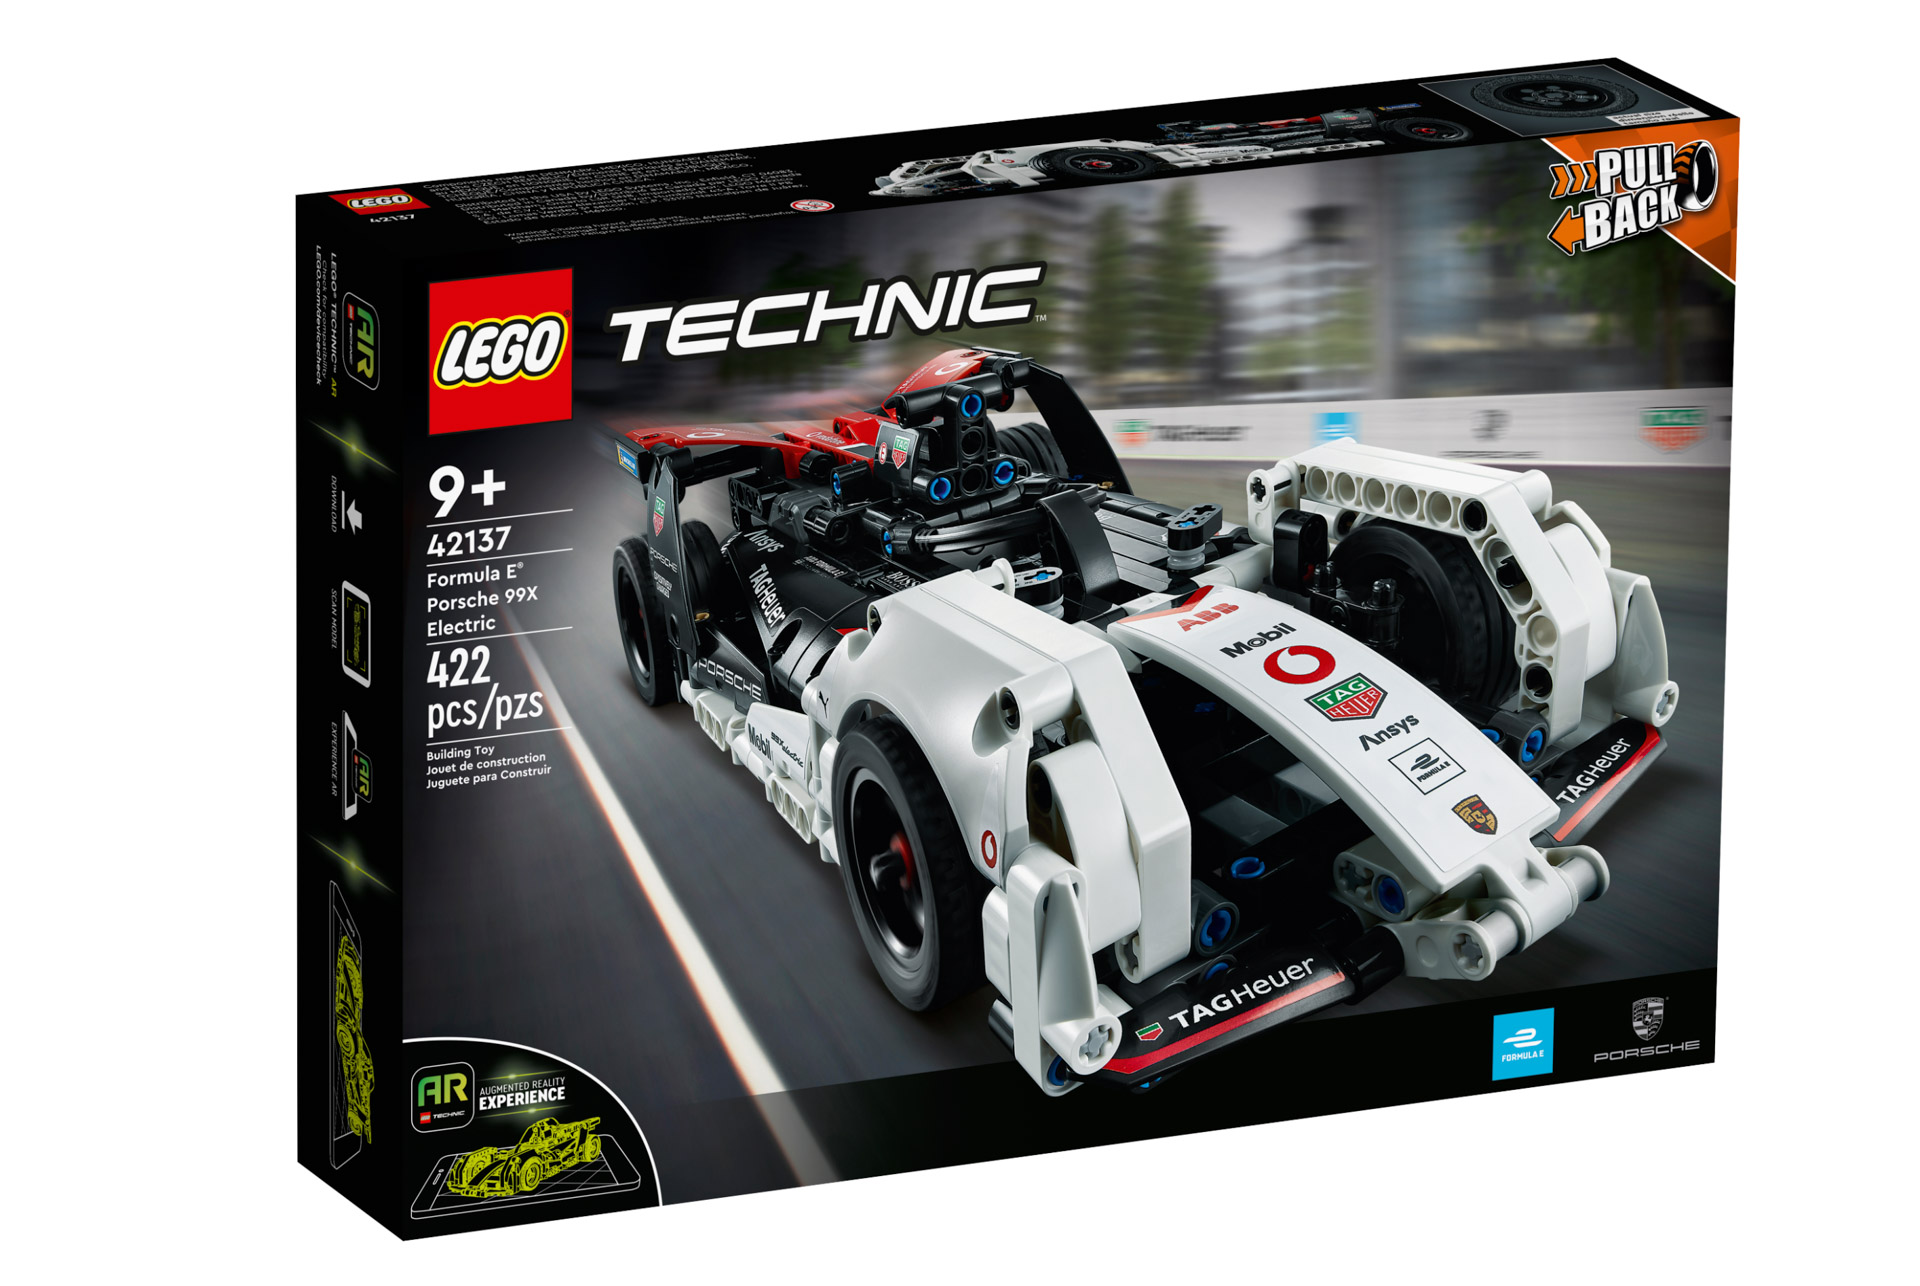 LEGO Technic 2022 Releases